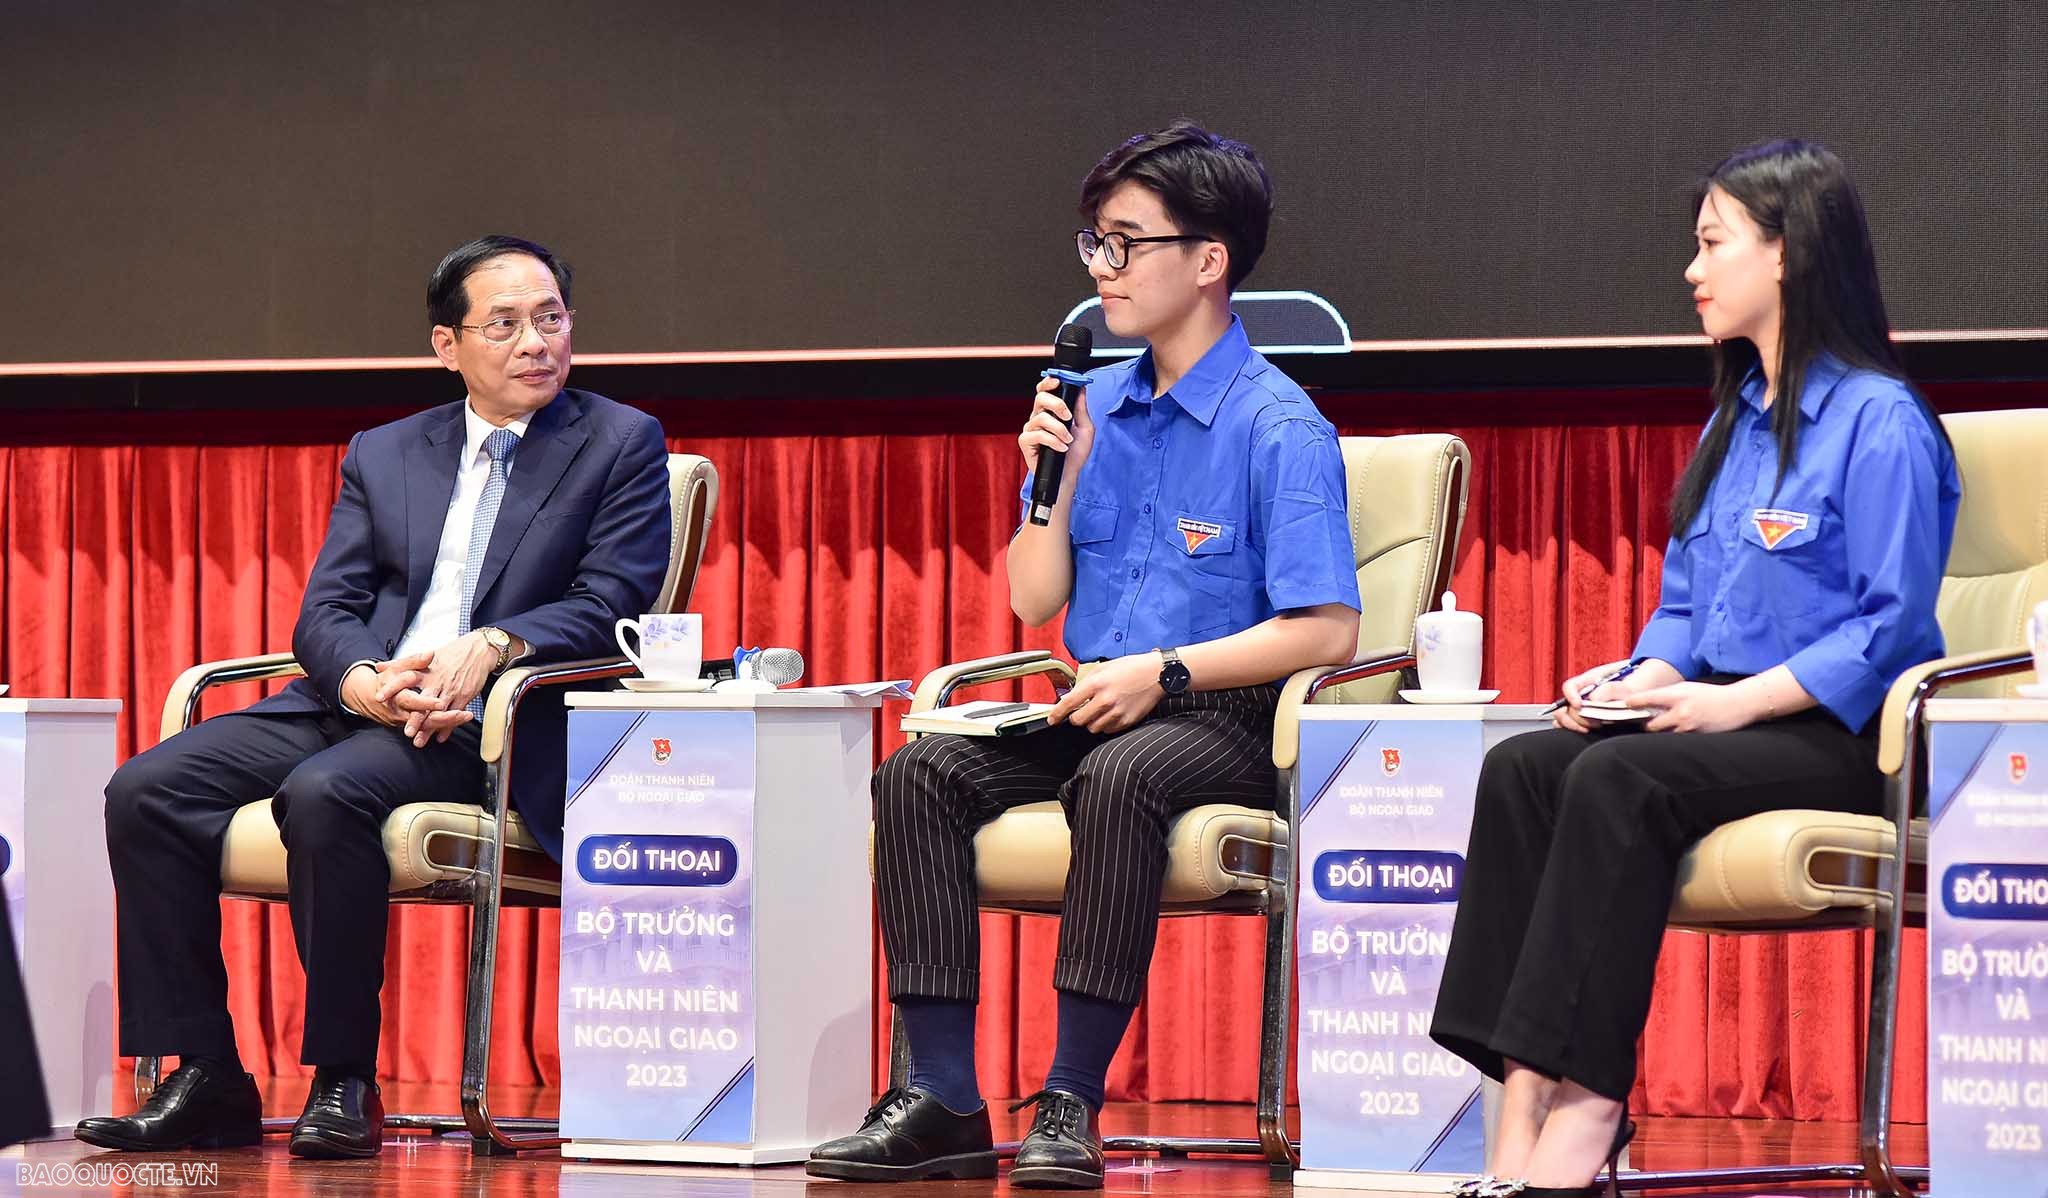 Chùm ảnh Bộ trưởng Bùi Thanh Sơn  đối thoại với thanh niên ngoại giao